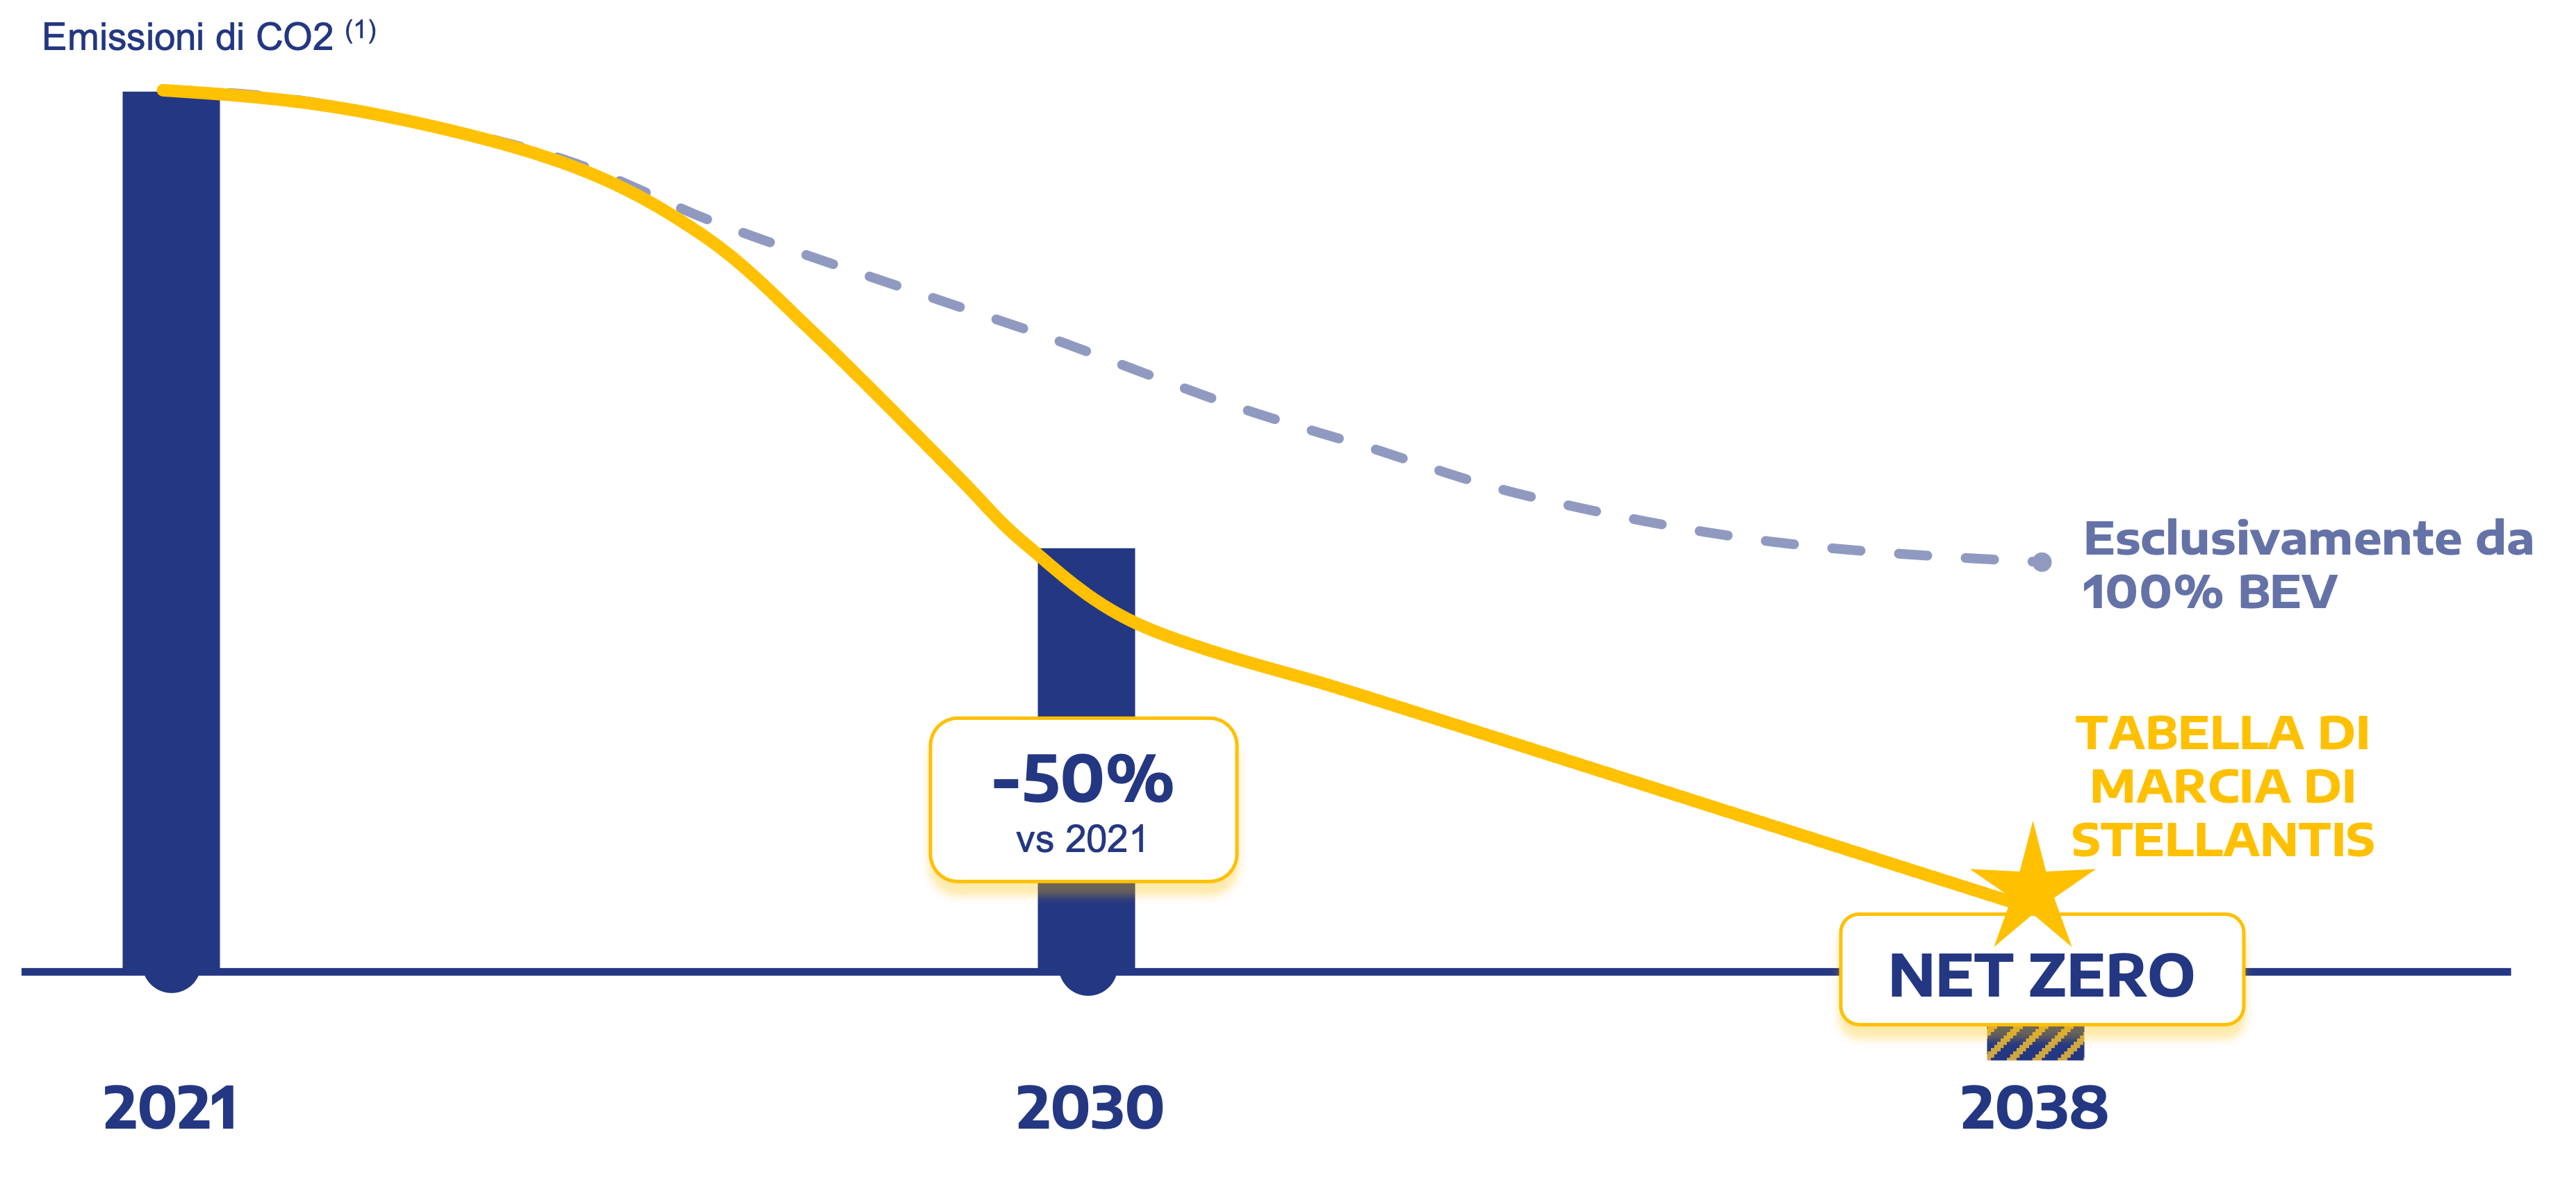 Grafico dell'obiettivo di Stellantis per la riduzione delle emissioni di CO2 del 50 percento entro il 2030 e il raggiungimento dell'azzeramento delle emissioni di carbonio entro il 2038